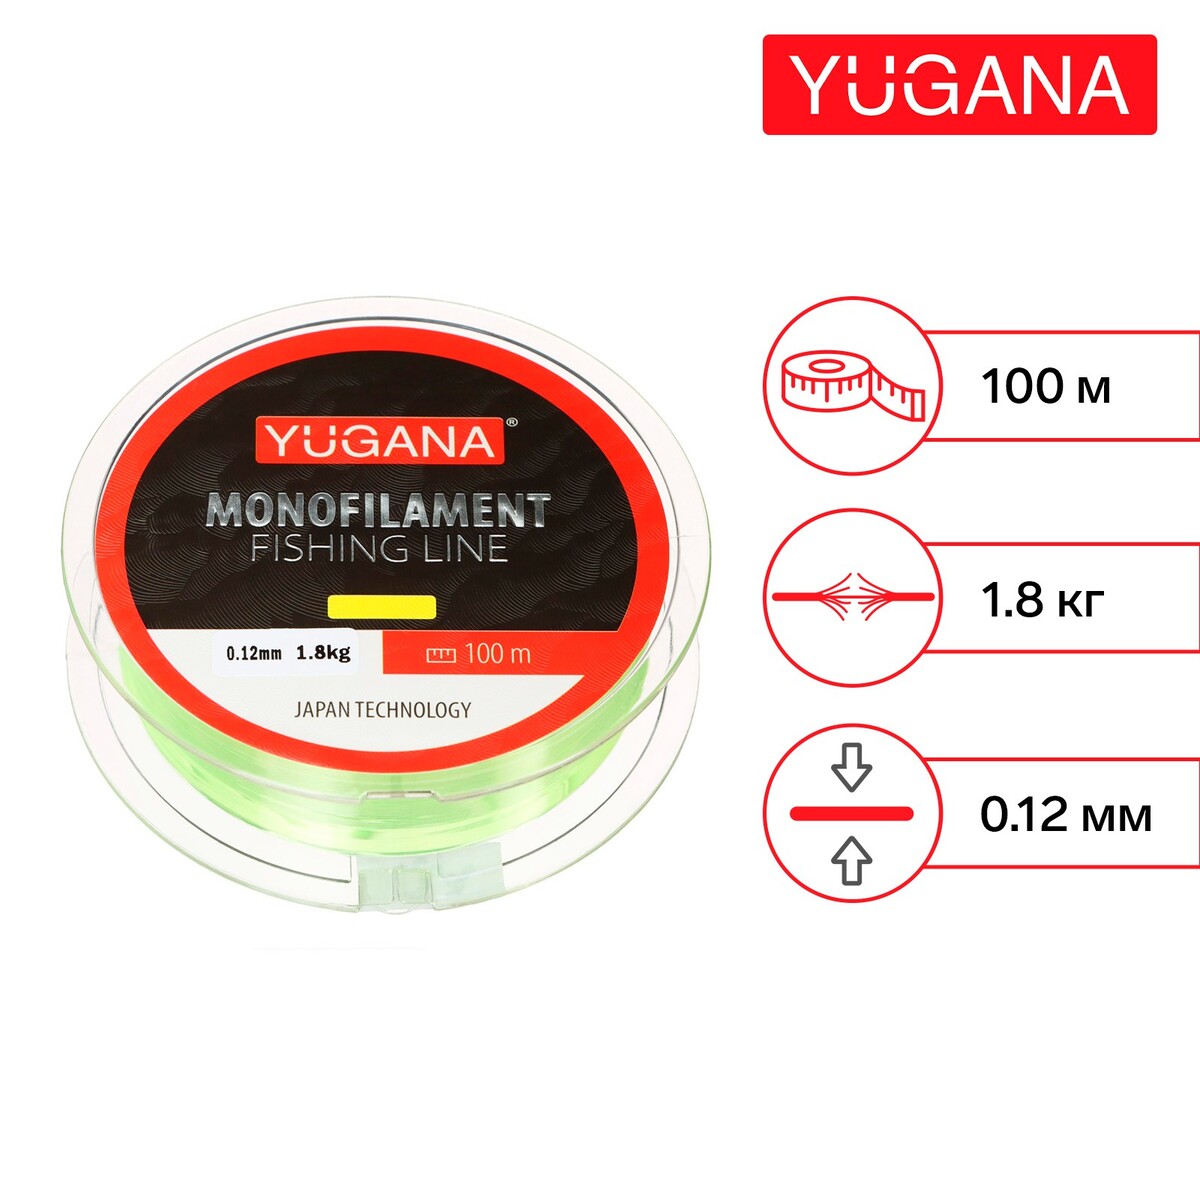 Леска монофильная yugana, диаметр 0.12 мм, тест 1.8 кг, 100 м, желтая YUGANA